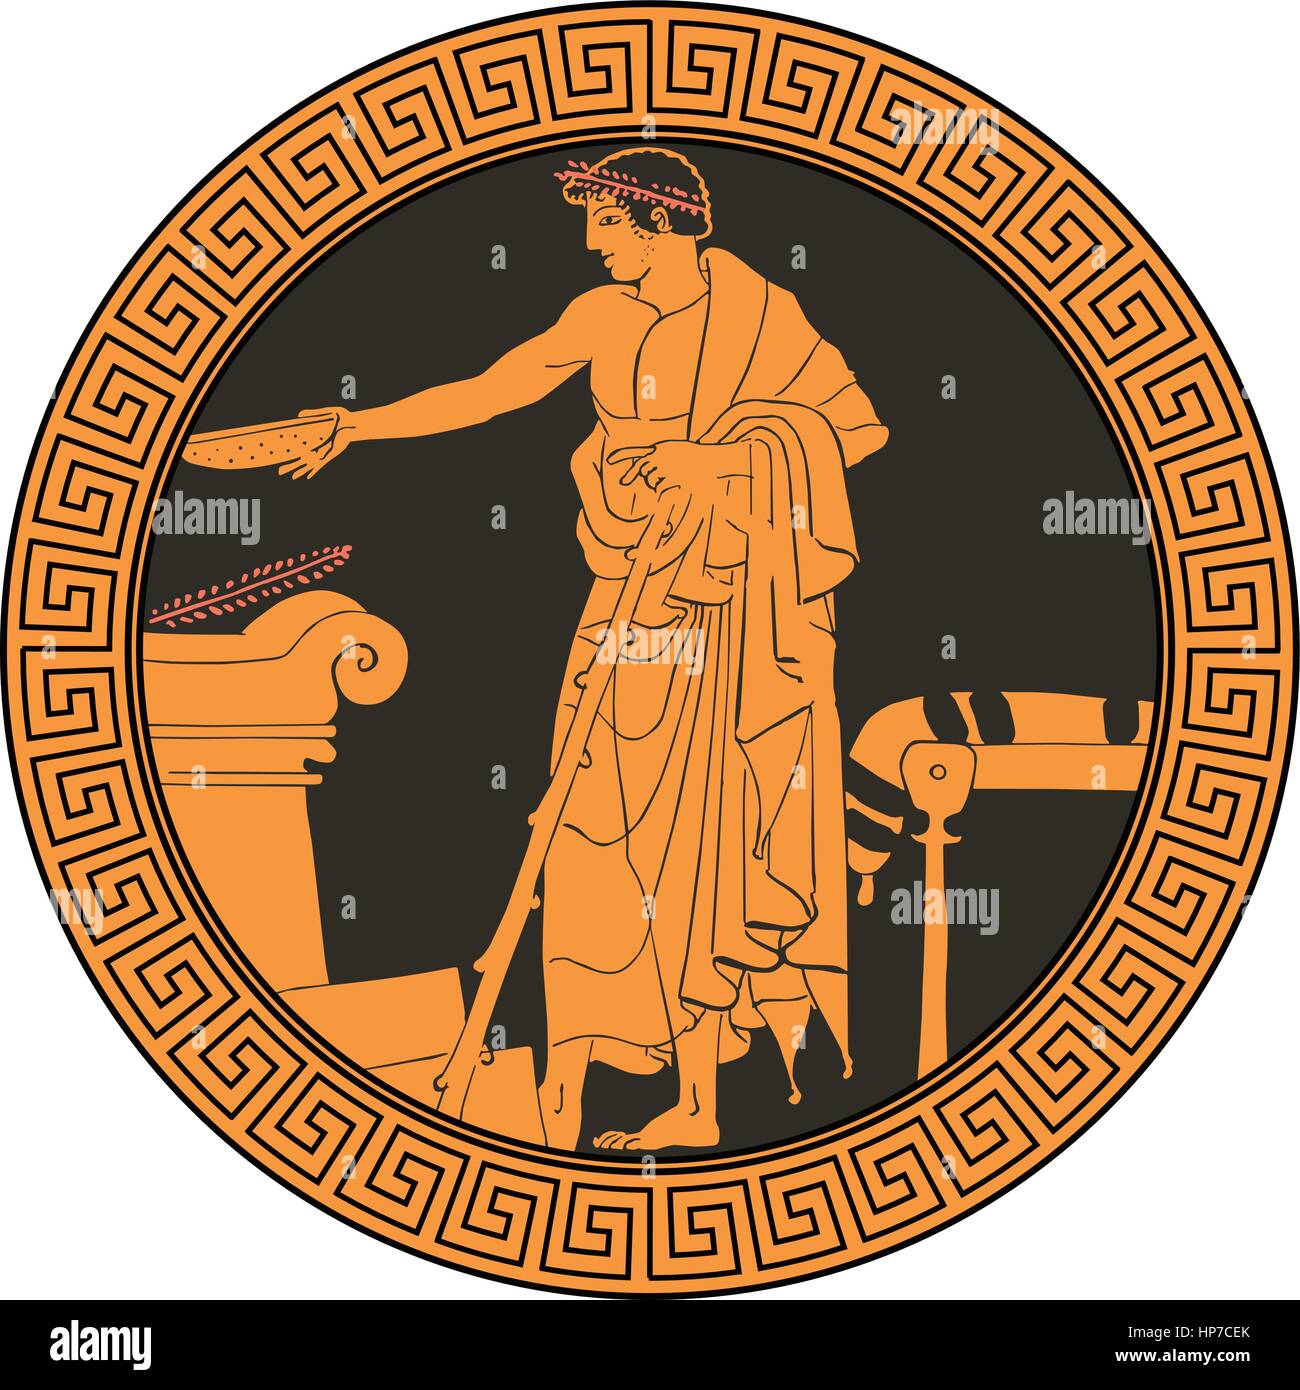 Im griechischen Stil auf dem Teller anrichten. Vektor-illustration Stock Vektor